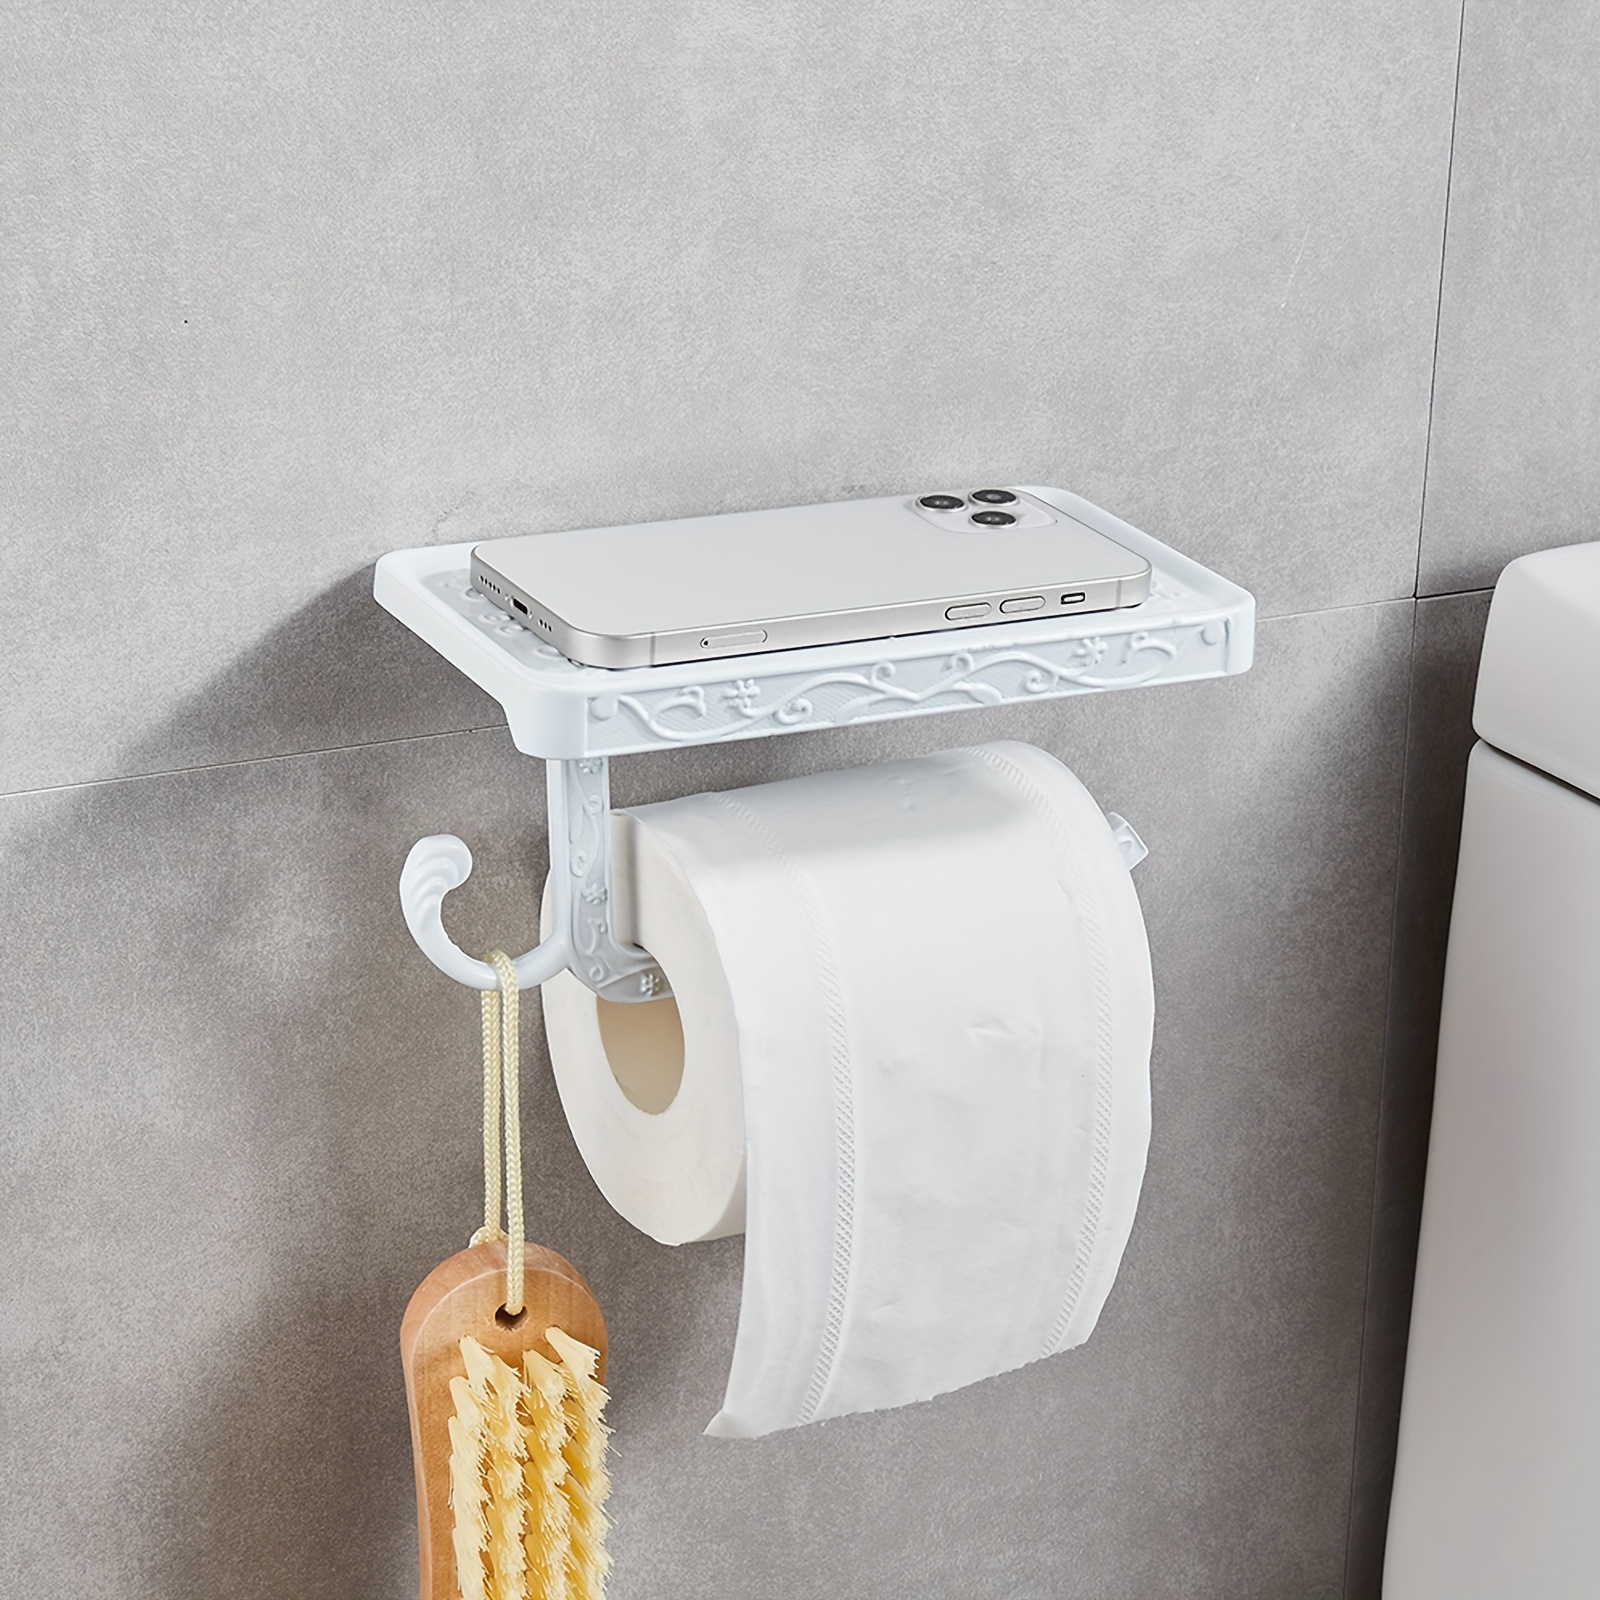 Support design pour rouleau papier toilette